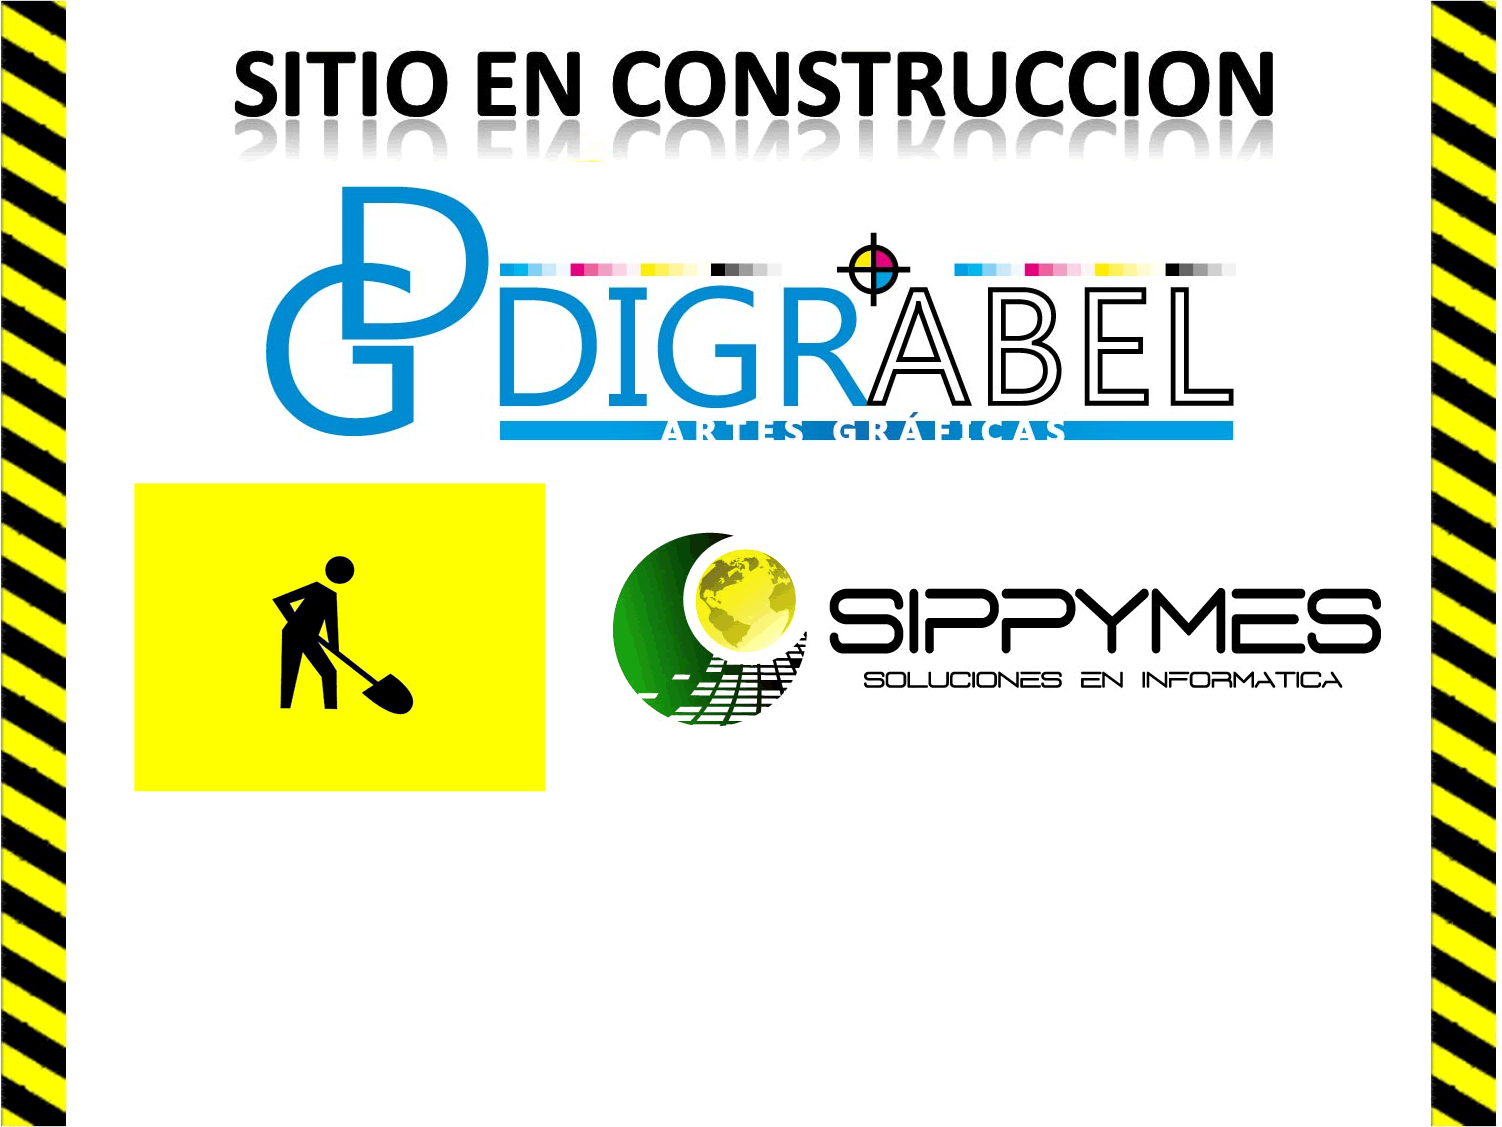 Sitio en Construcción by SIPPYMES